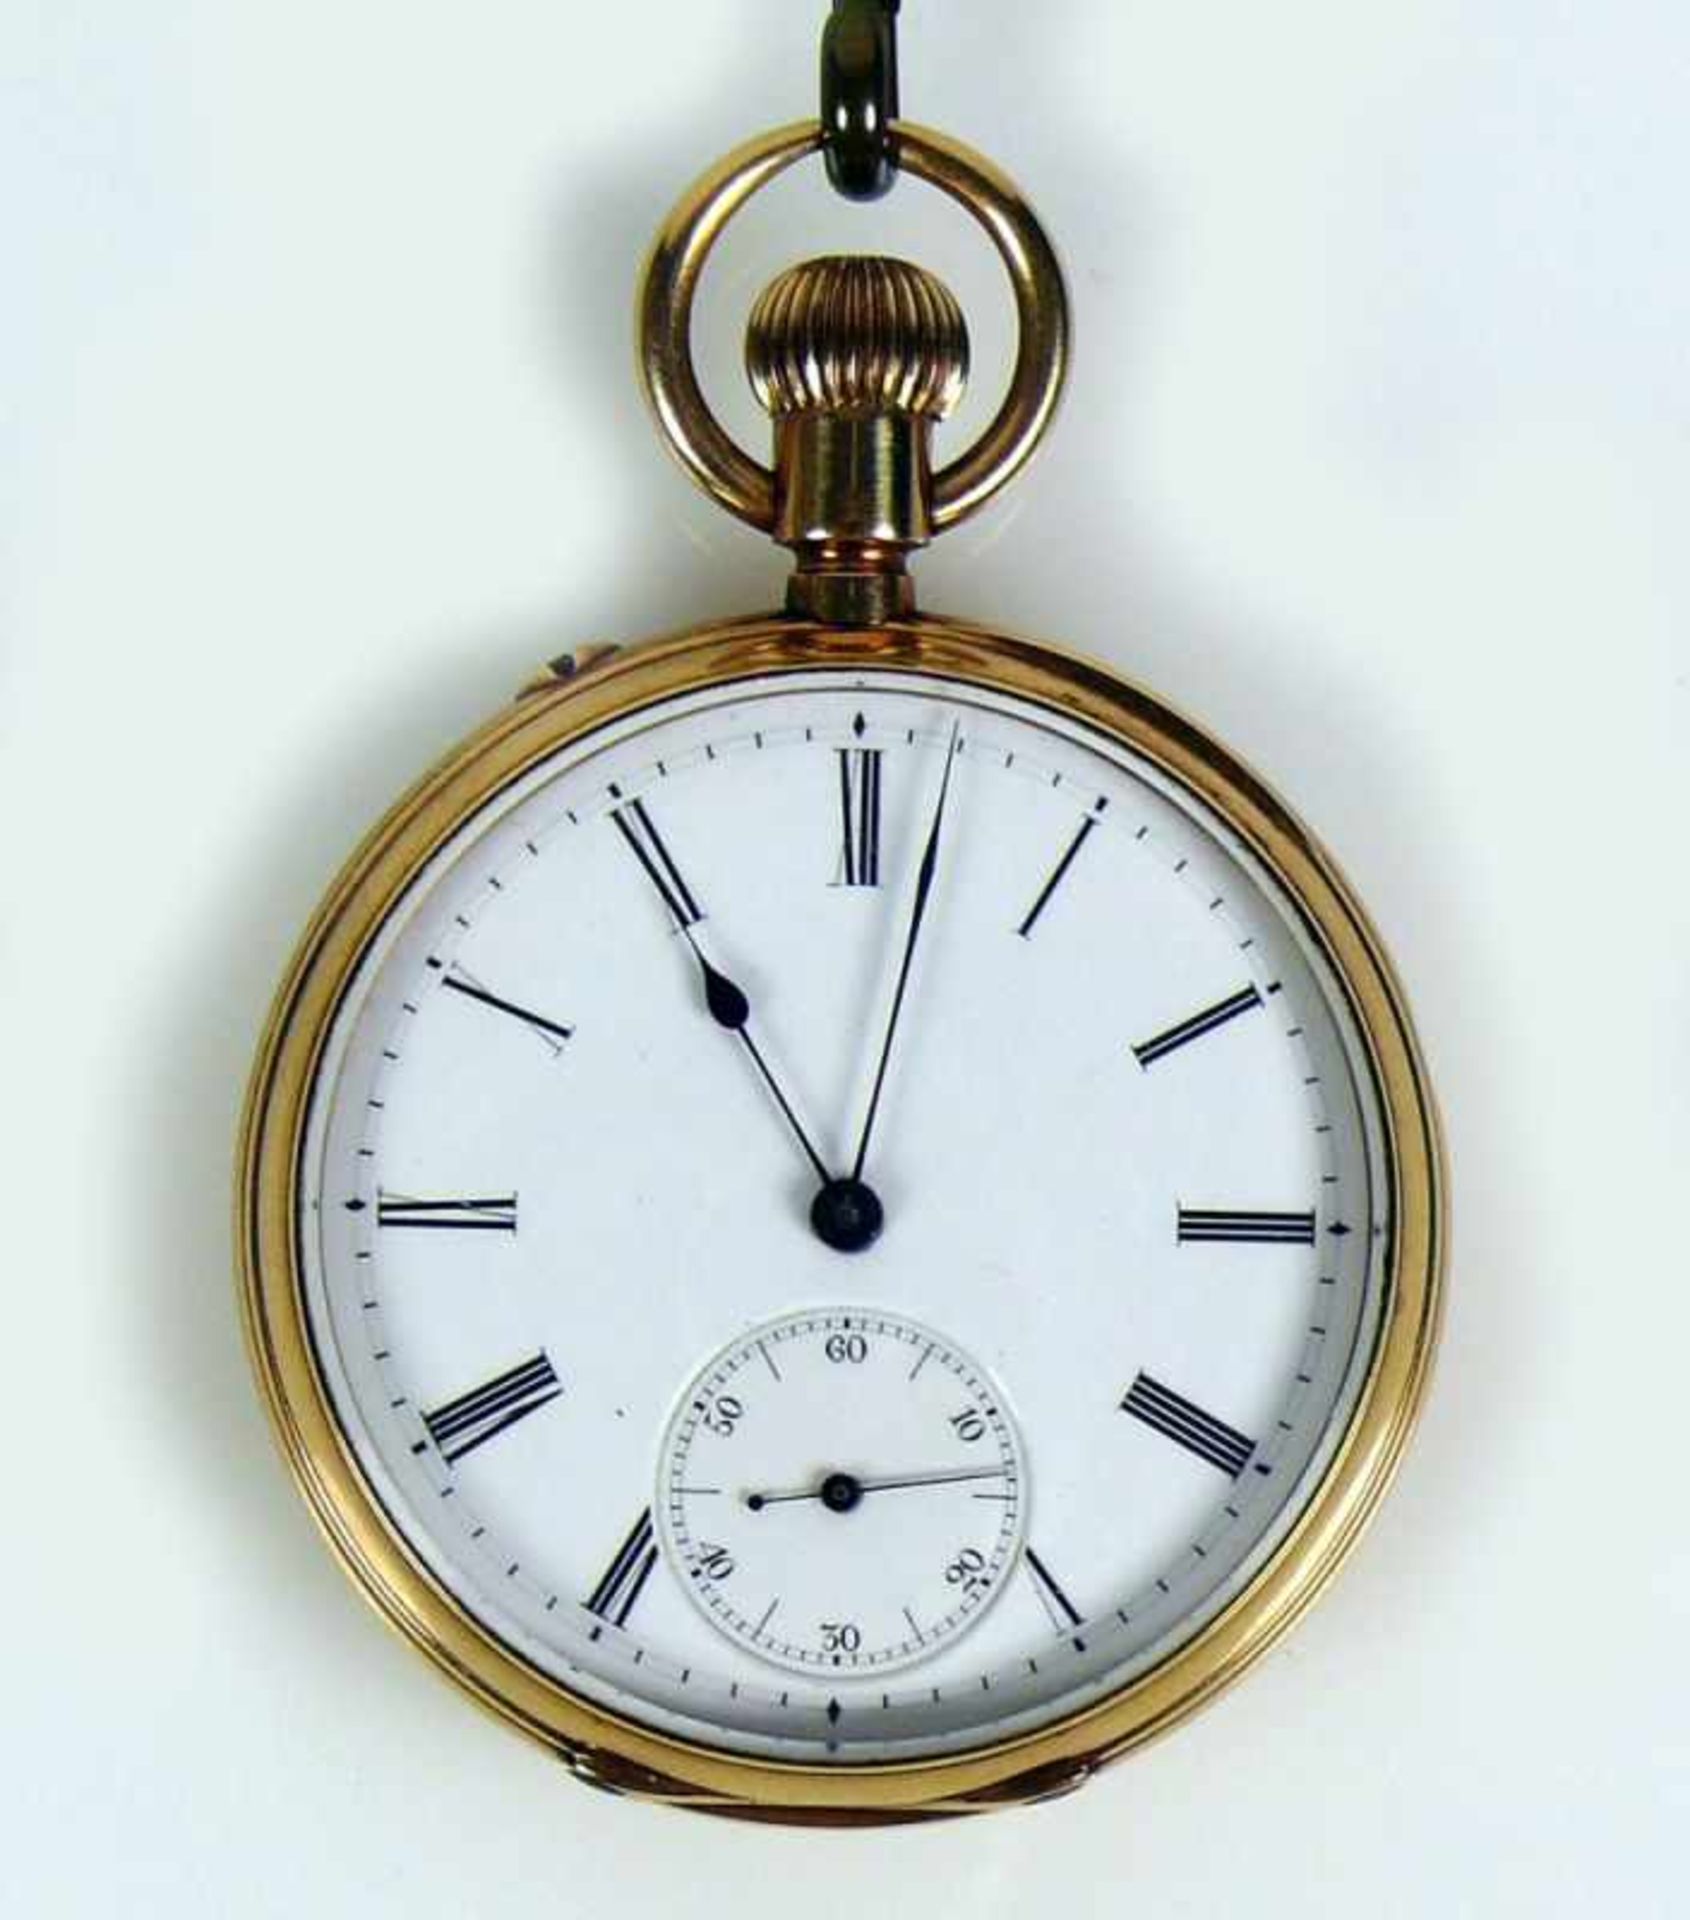 Herrentaschenuhr (Deutsche Uhrenfabrikation Glashütte) in 14ct GG-Gehäuse; Staubdeckel verg.; - Bild 3 aus 5